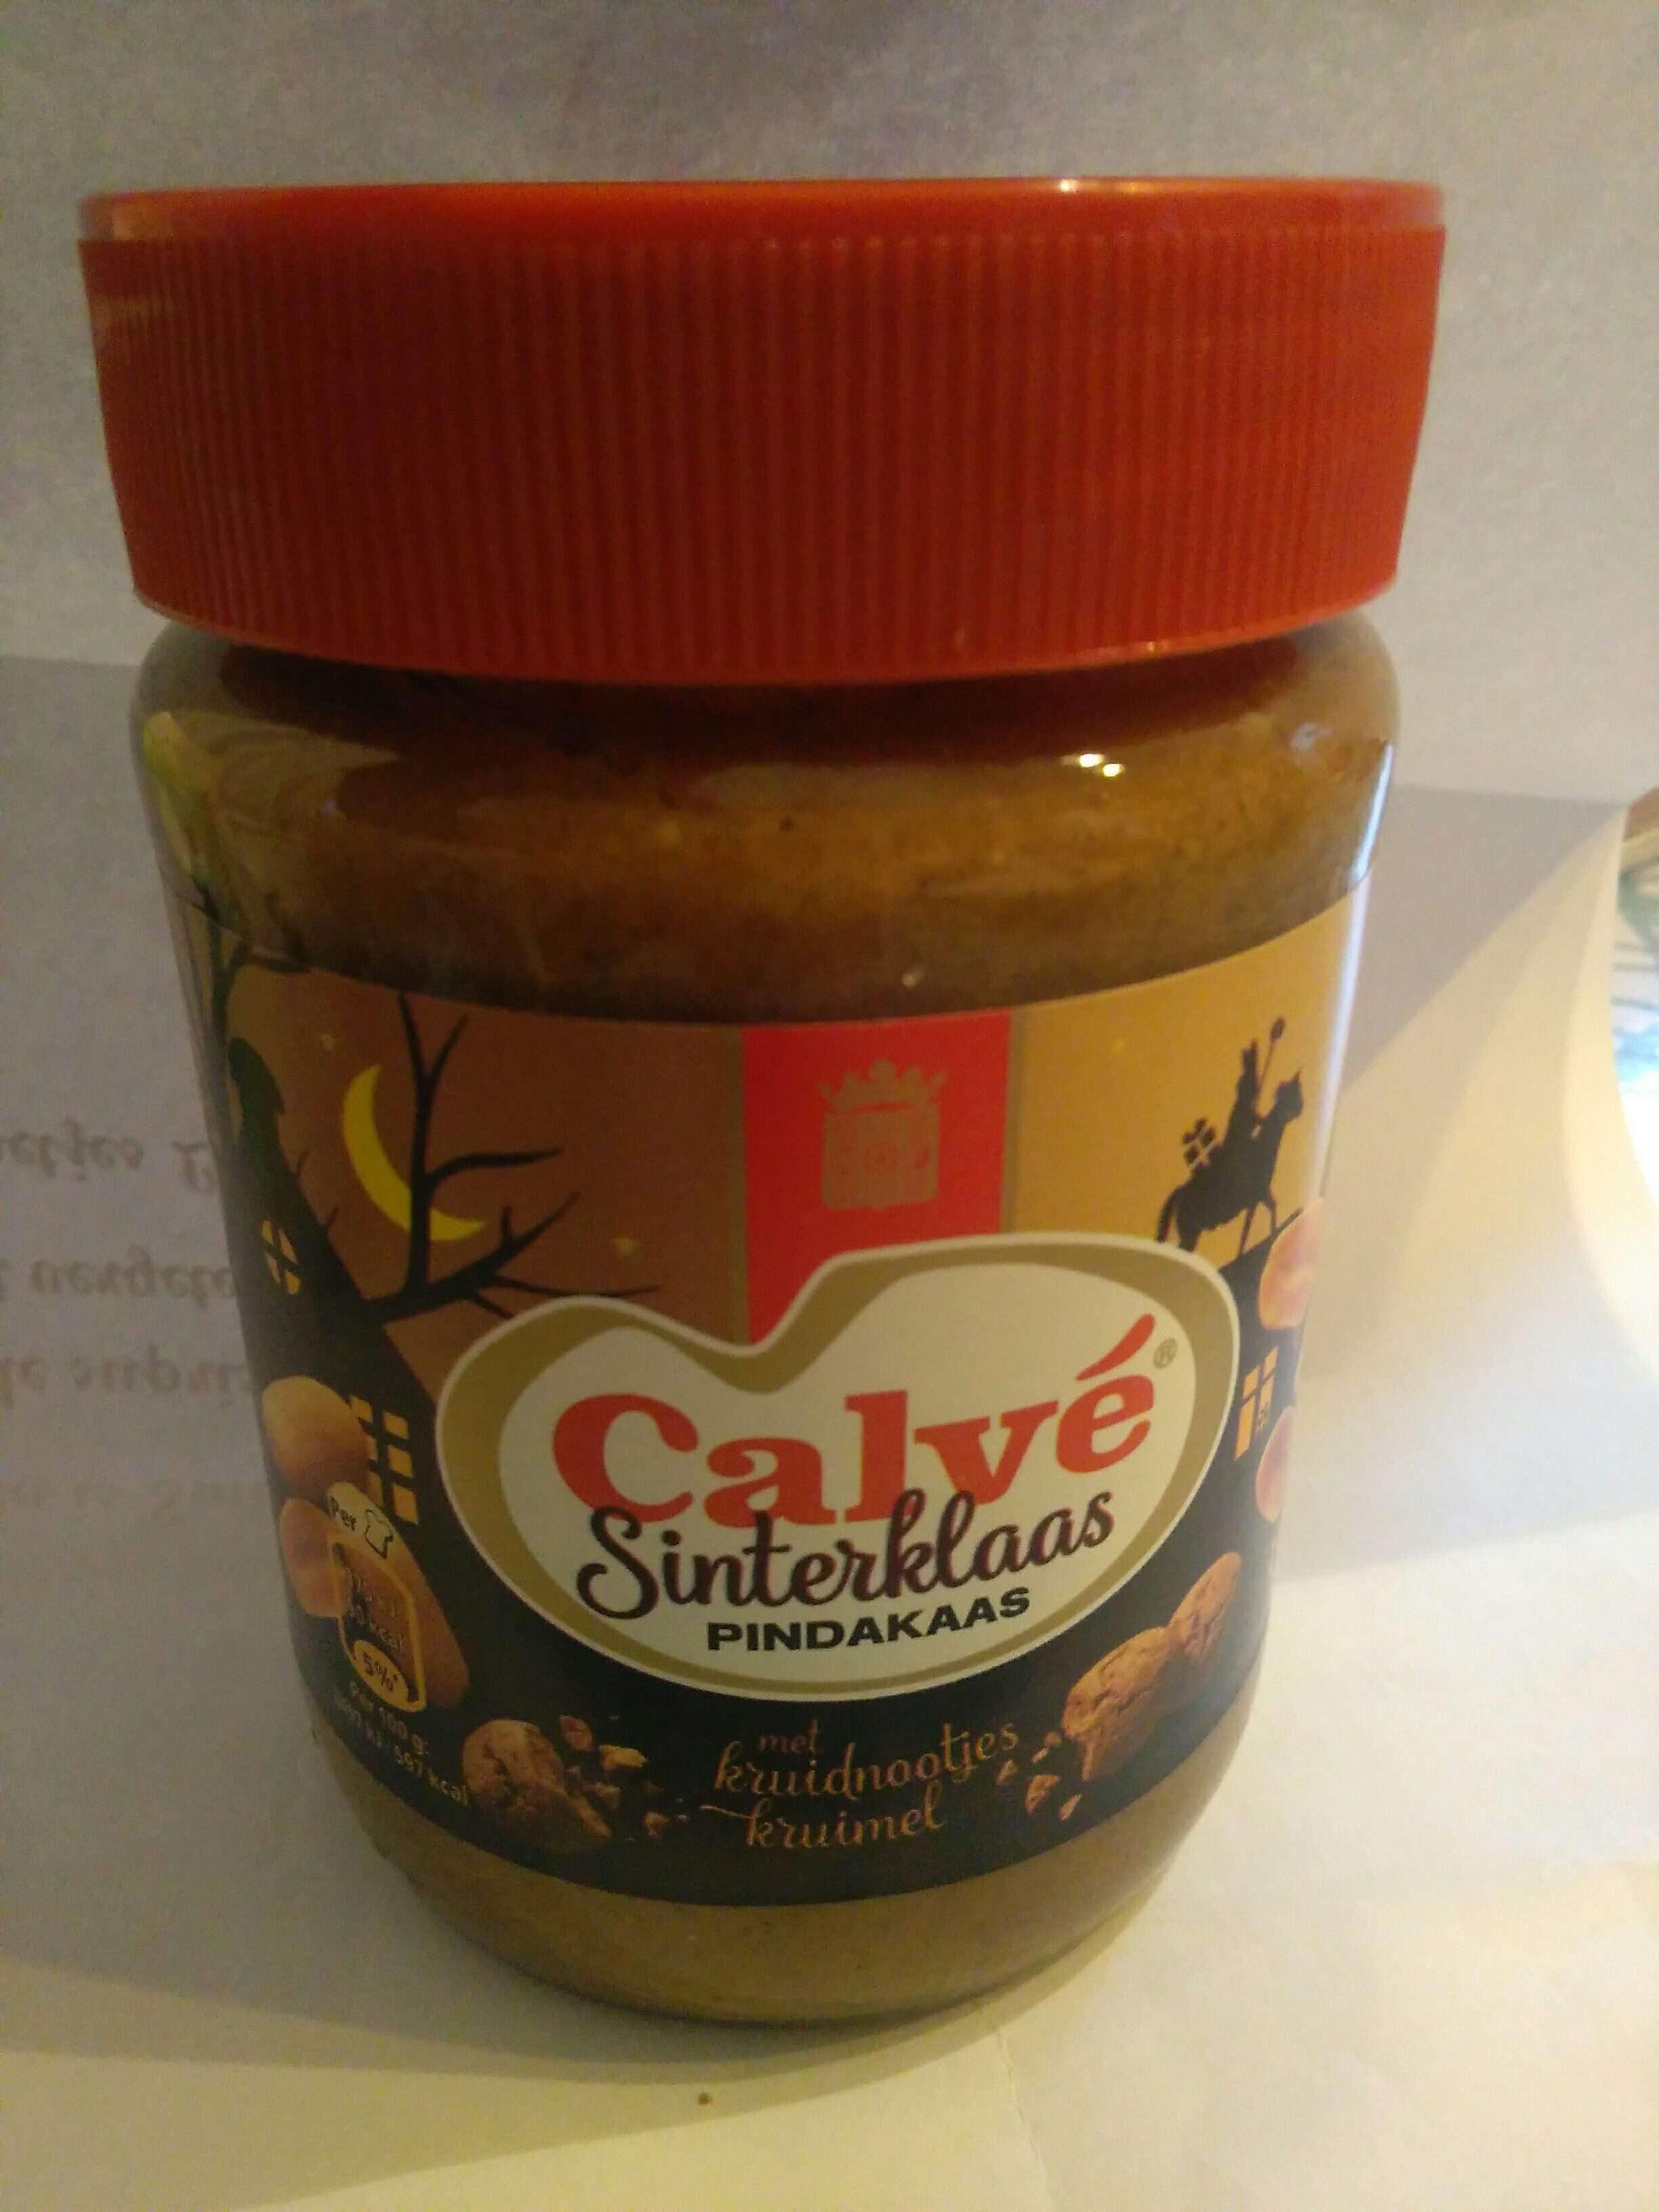 Calvé Sinterklaas Pindakaas met kruidnootjeskruimel - Product